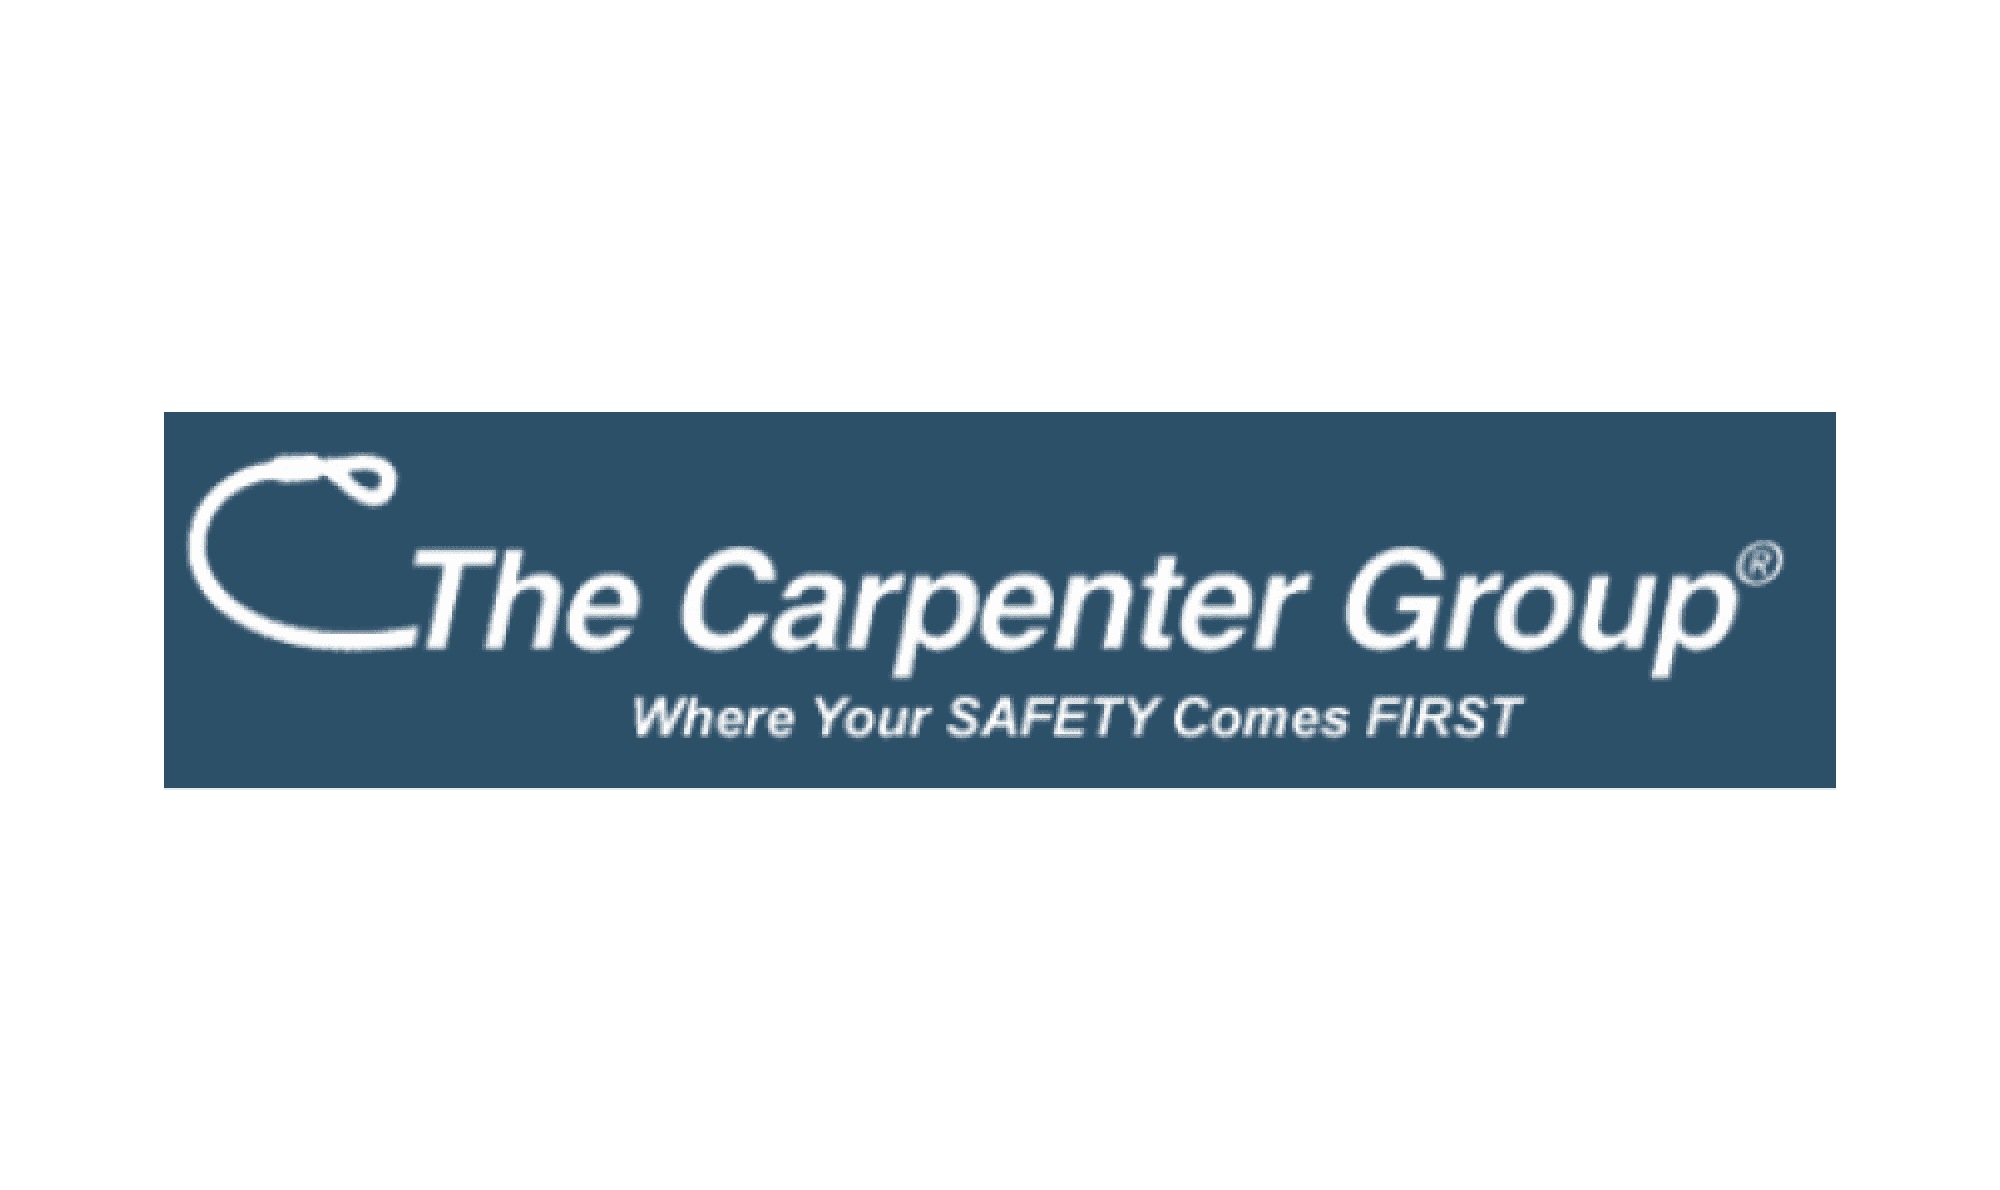 The Carpenter Group logo